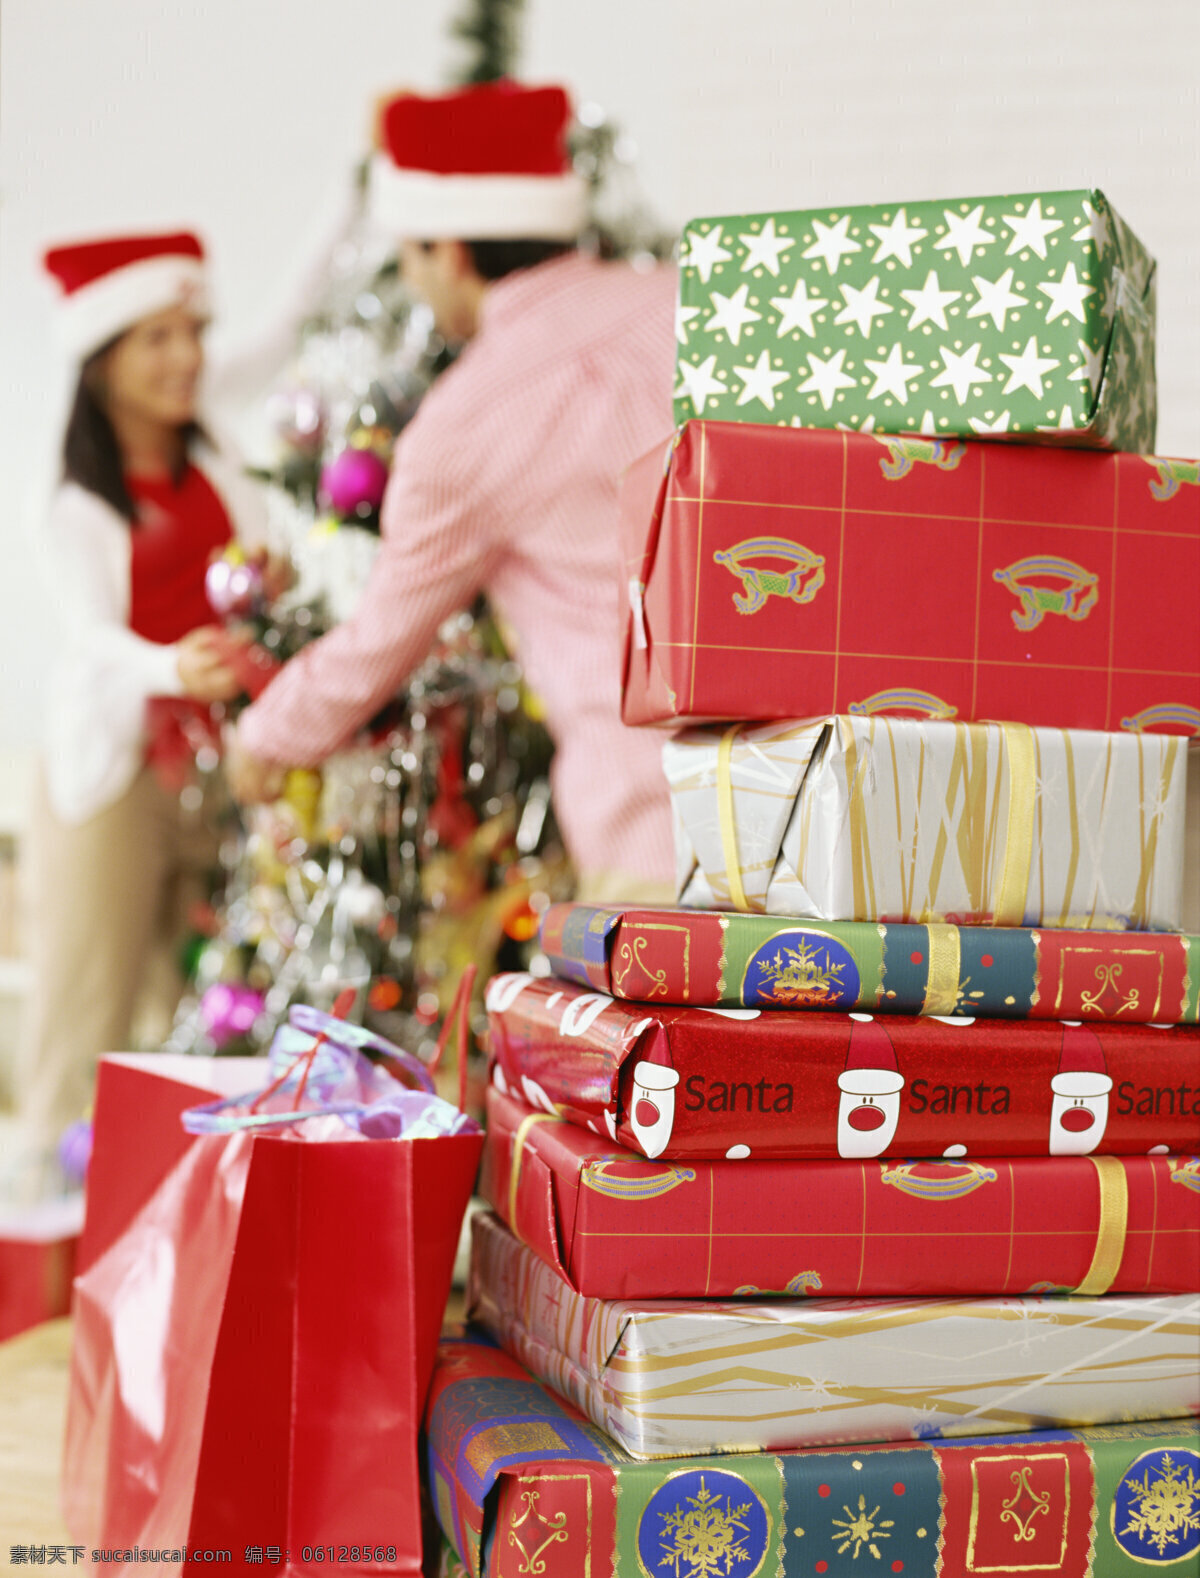 圣诞节 外国 夫妇 新年素材 外国家庭 夫妻 圣诞树 礼物 礼包 礼品 生活人物 人物图片